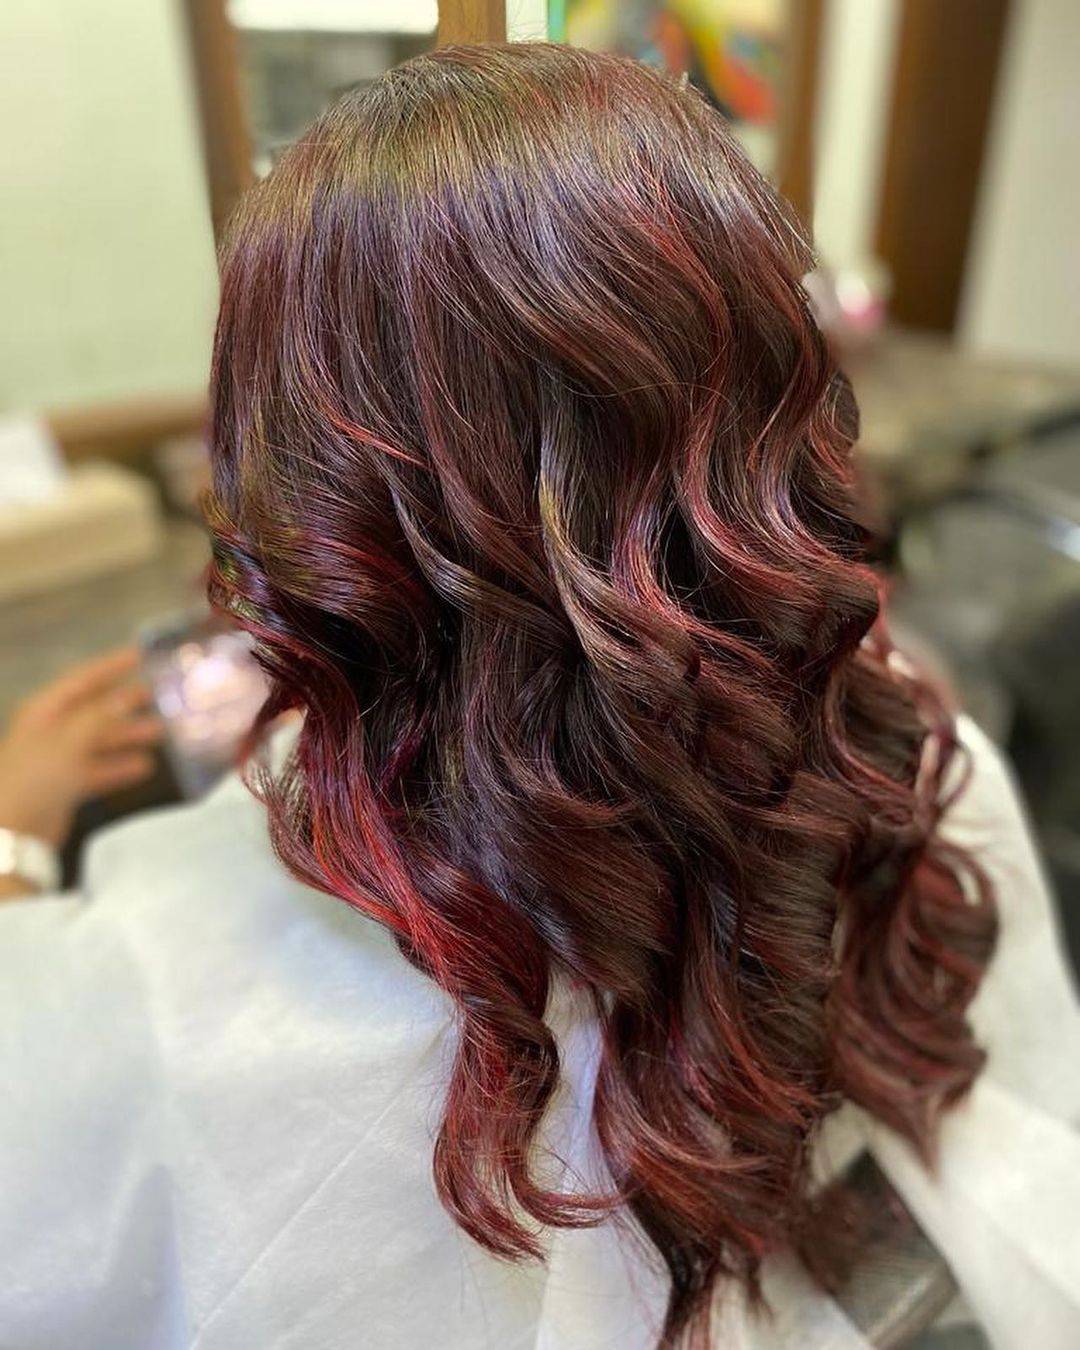 Burgundy hair color 226 burgundy hair color | burgundy hair color for women | burgundy hair color highlights Burgundy Hair Color